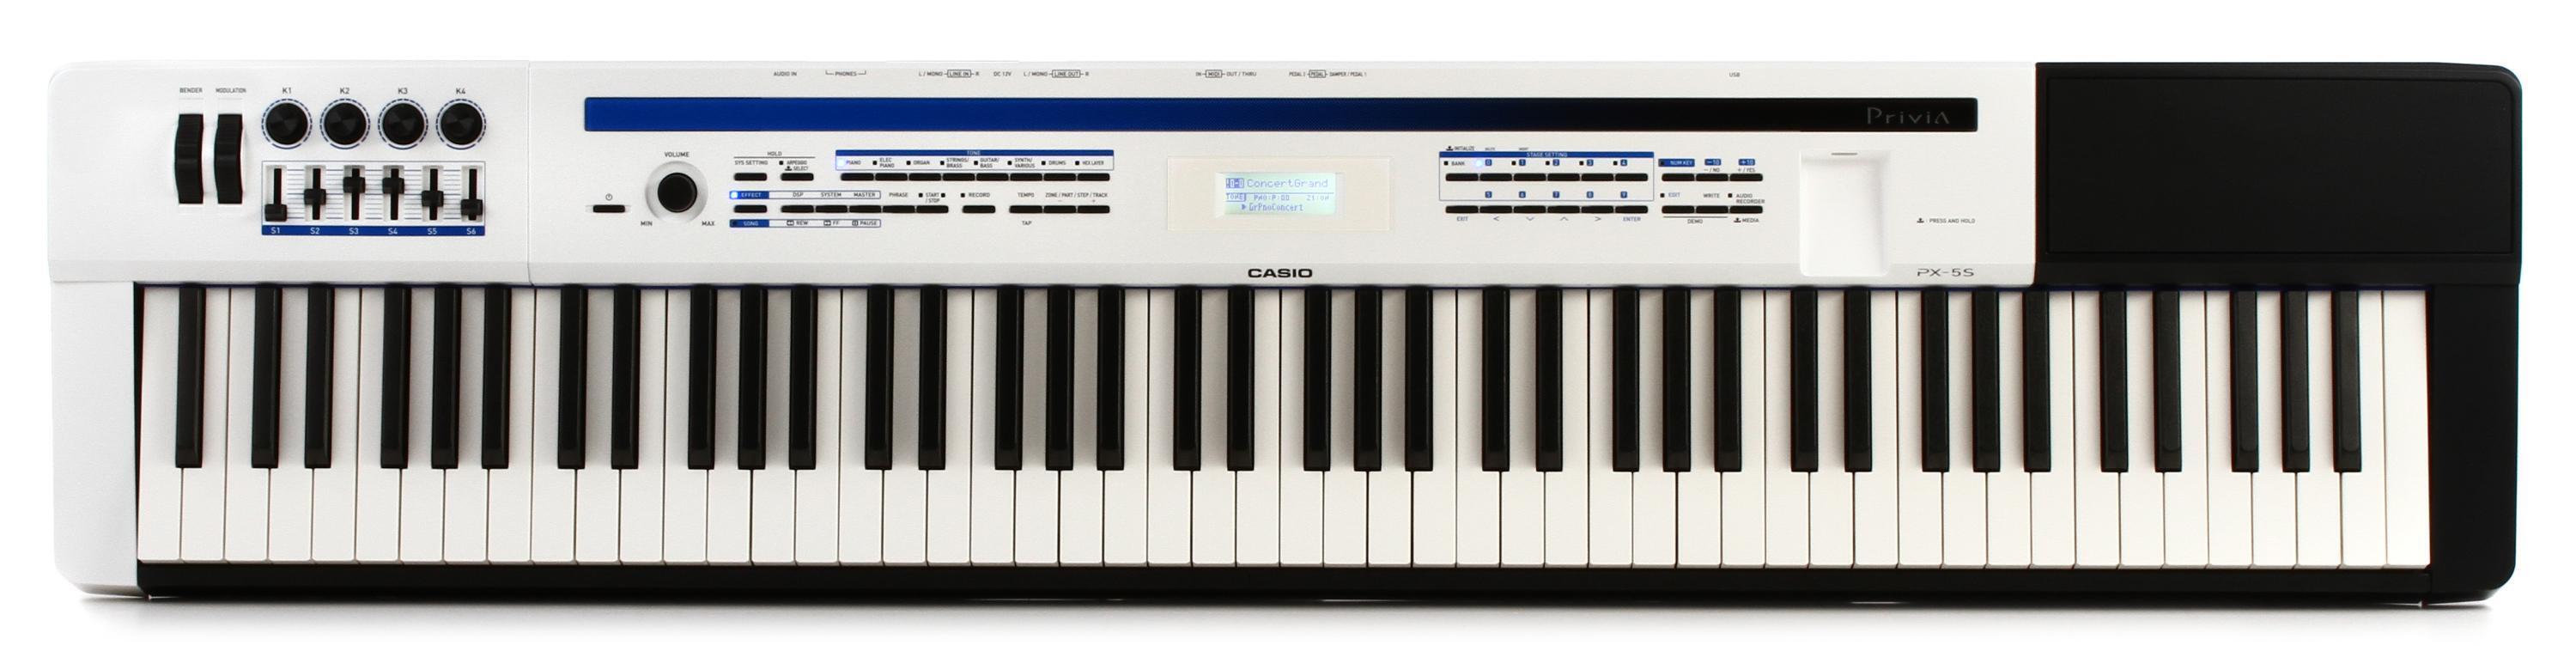 Bundled Item: Casio Privia PX-5S 88-key Stage Piano